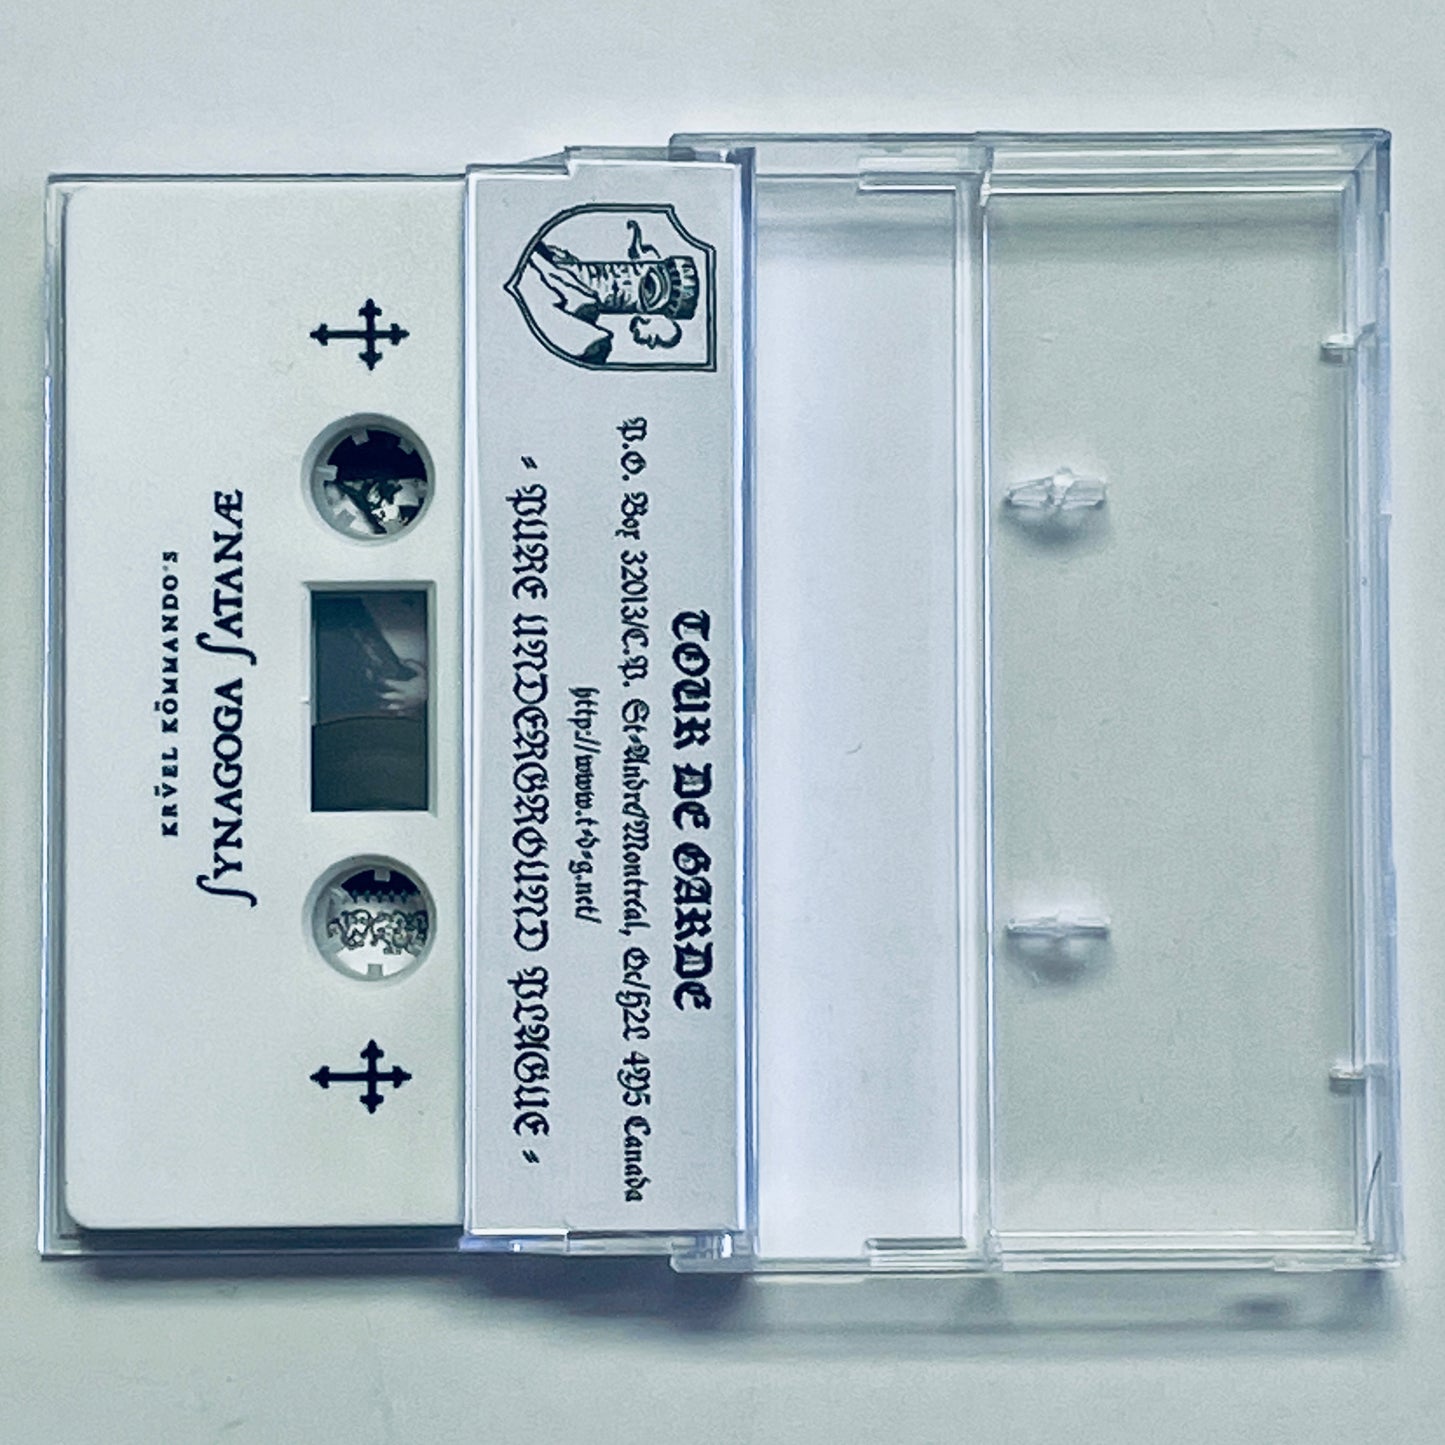 Kruel Kommando – Synagoga Satanae cassette tape (used)